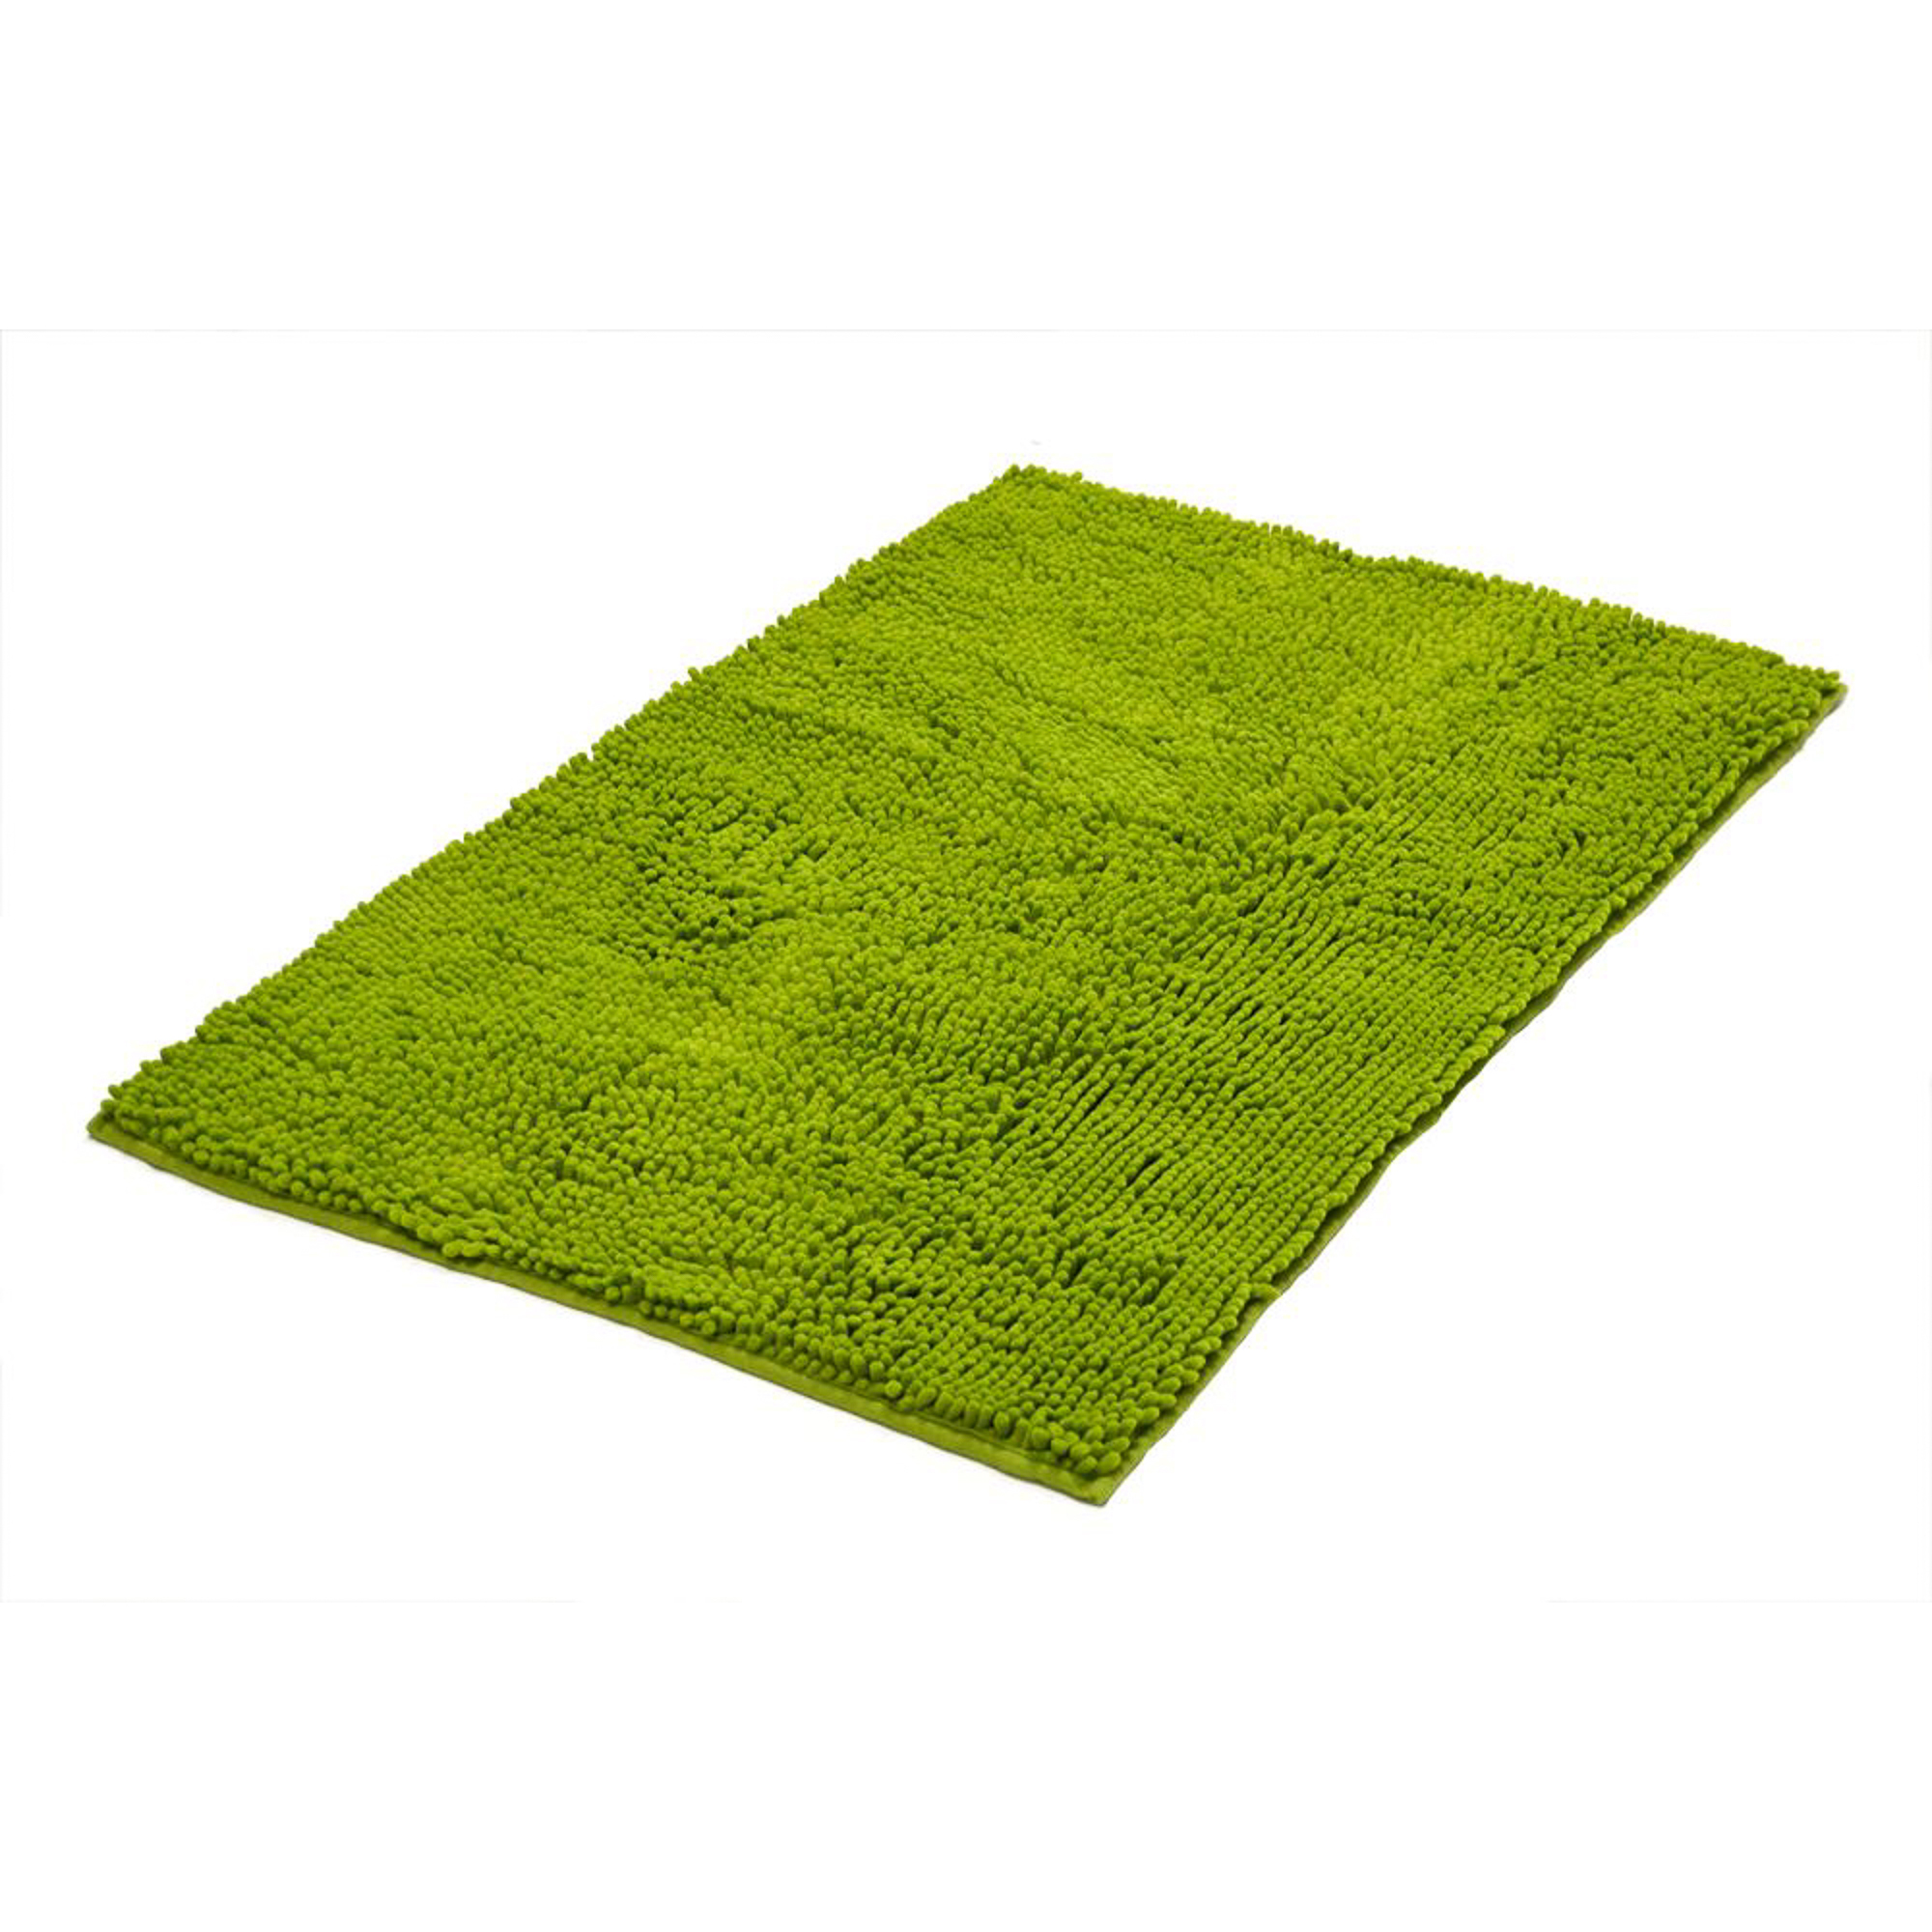 Коврик для ванной комнаты Soft зеленый 55*85 Ridder коврик для ванной комнаты carl зеленый 55 50 ridder